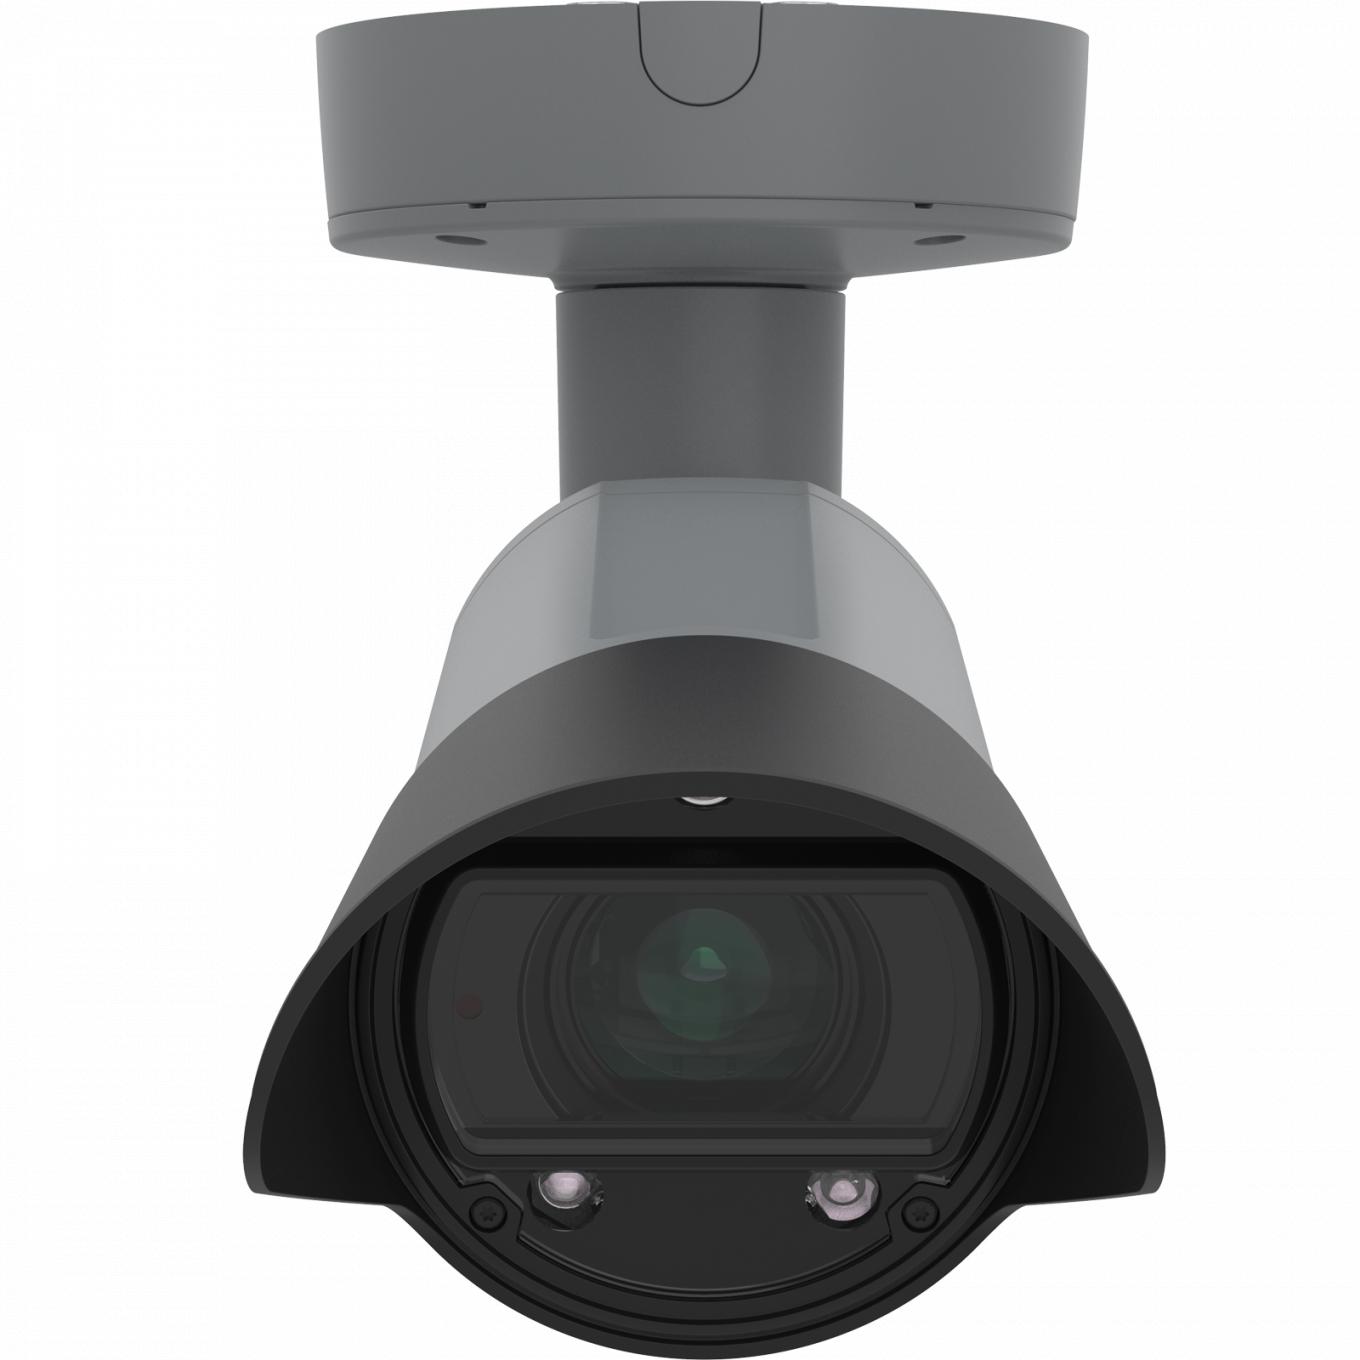 AXIS Q1700-LE License Plate Camera montada no teto e vista pela frente.